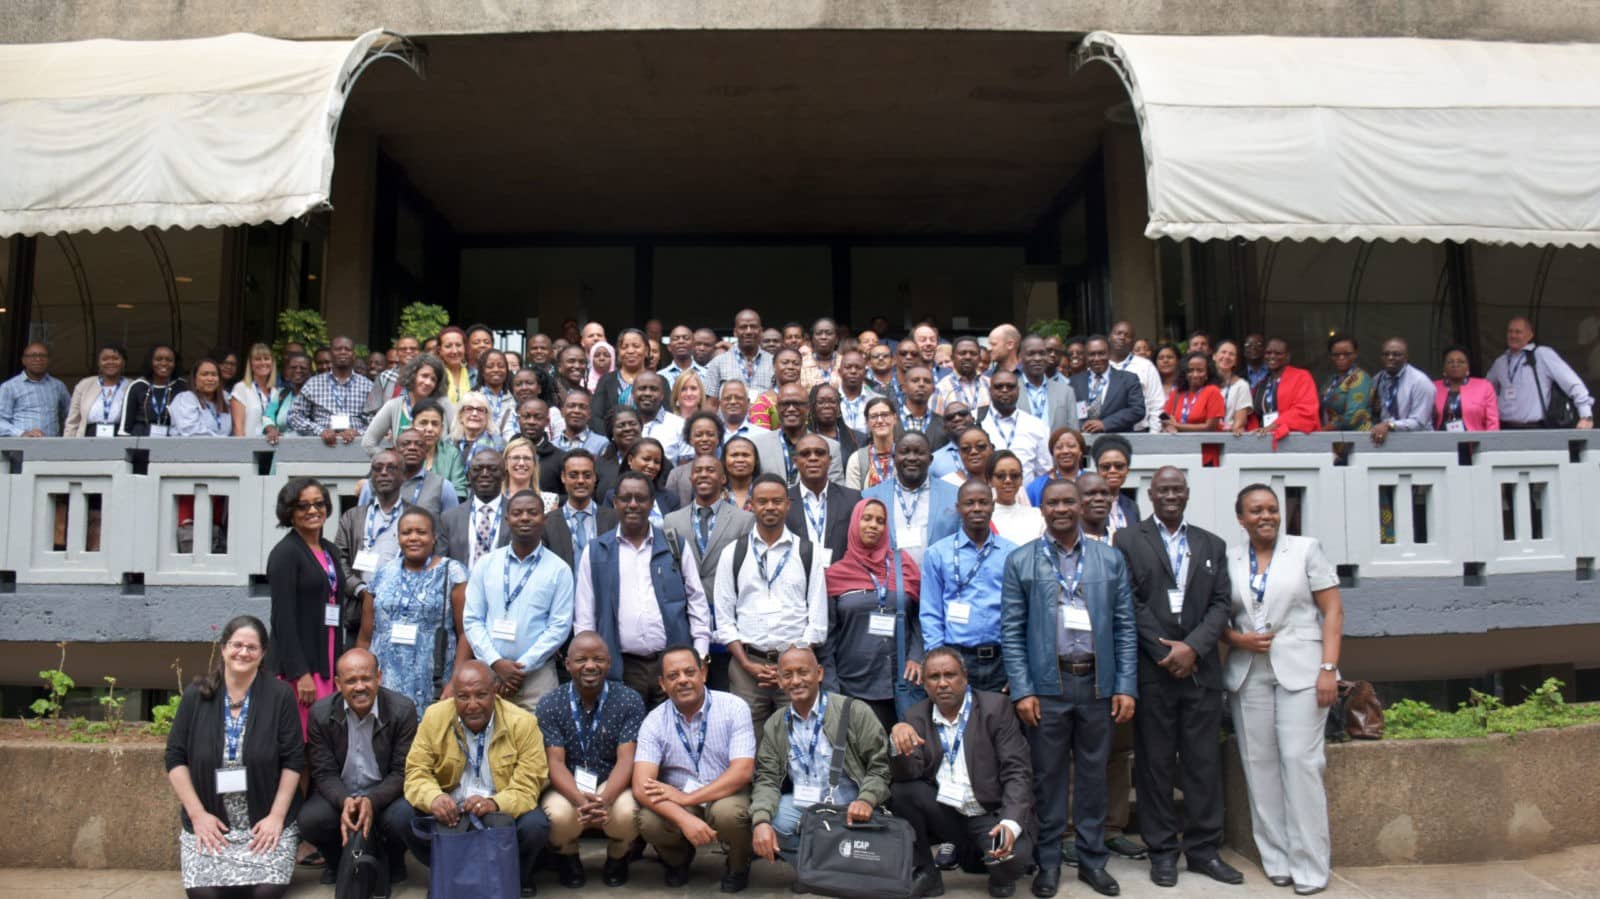 CQUIN Second Annual Meeting Addis Ababa, Ethiopia